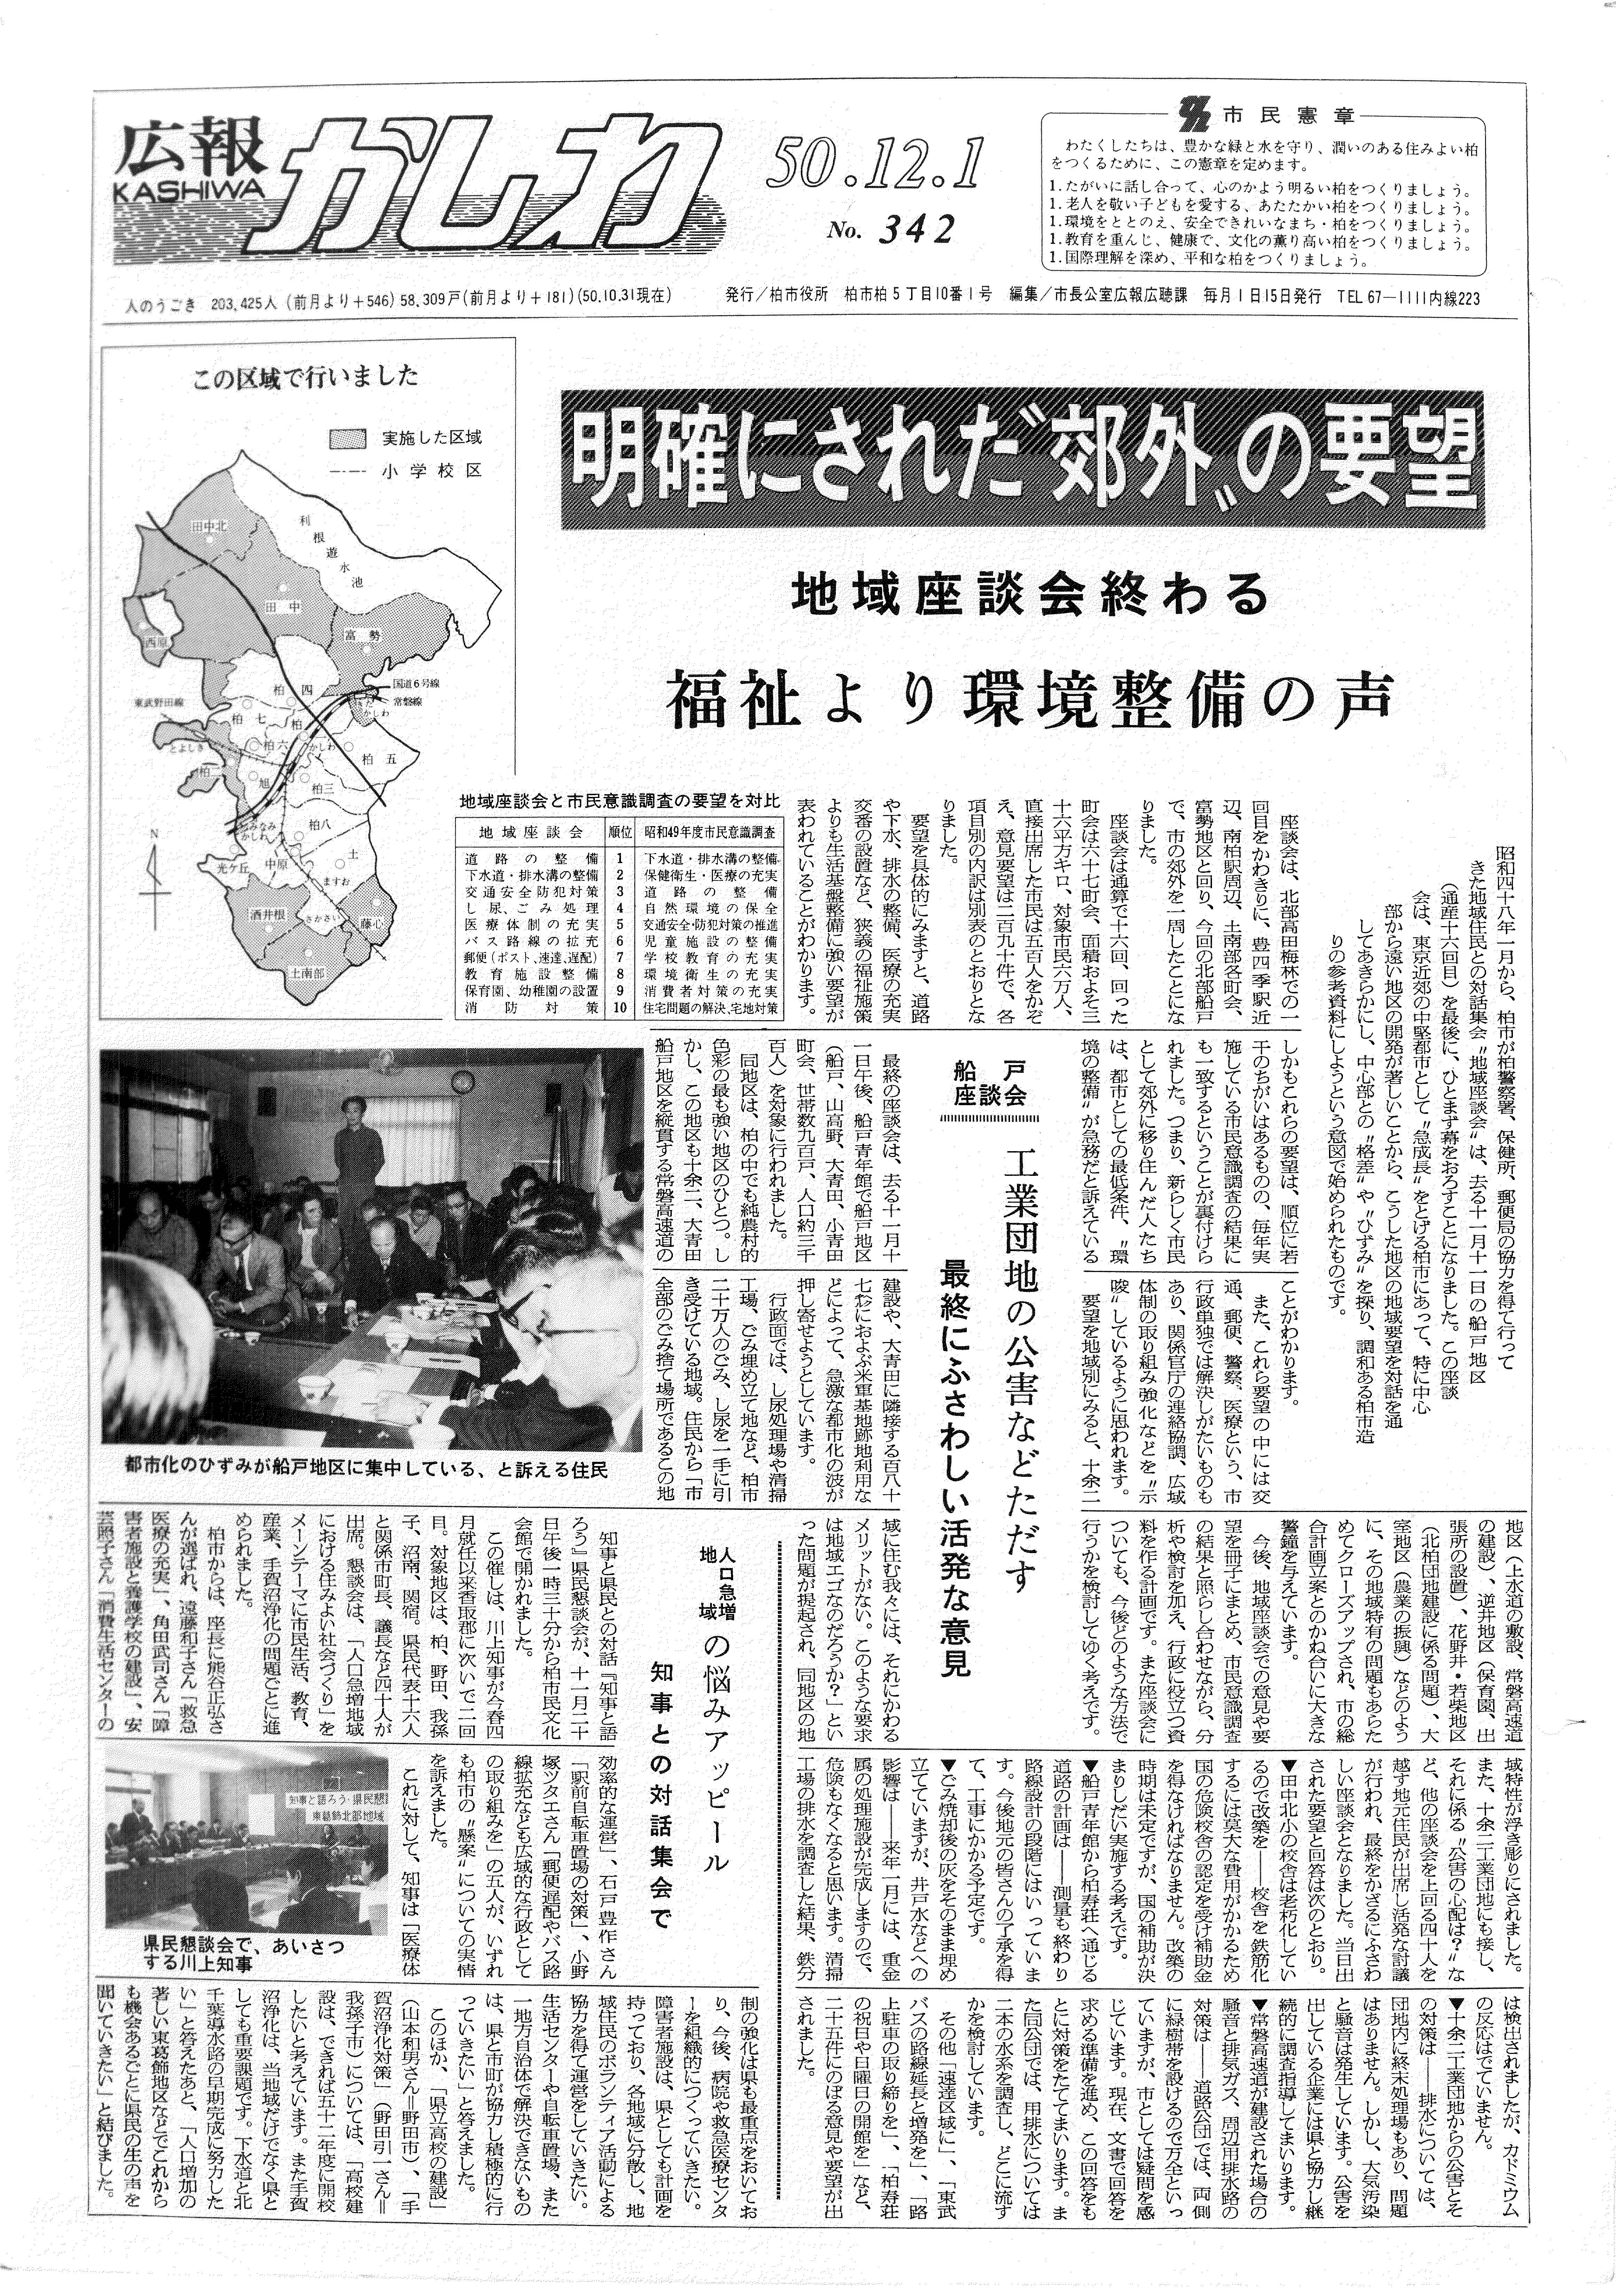 広報かしわ　昭和50年12月1日発行　342号